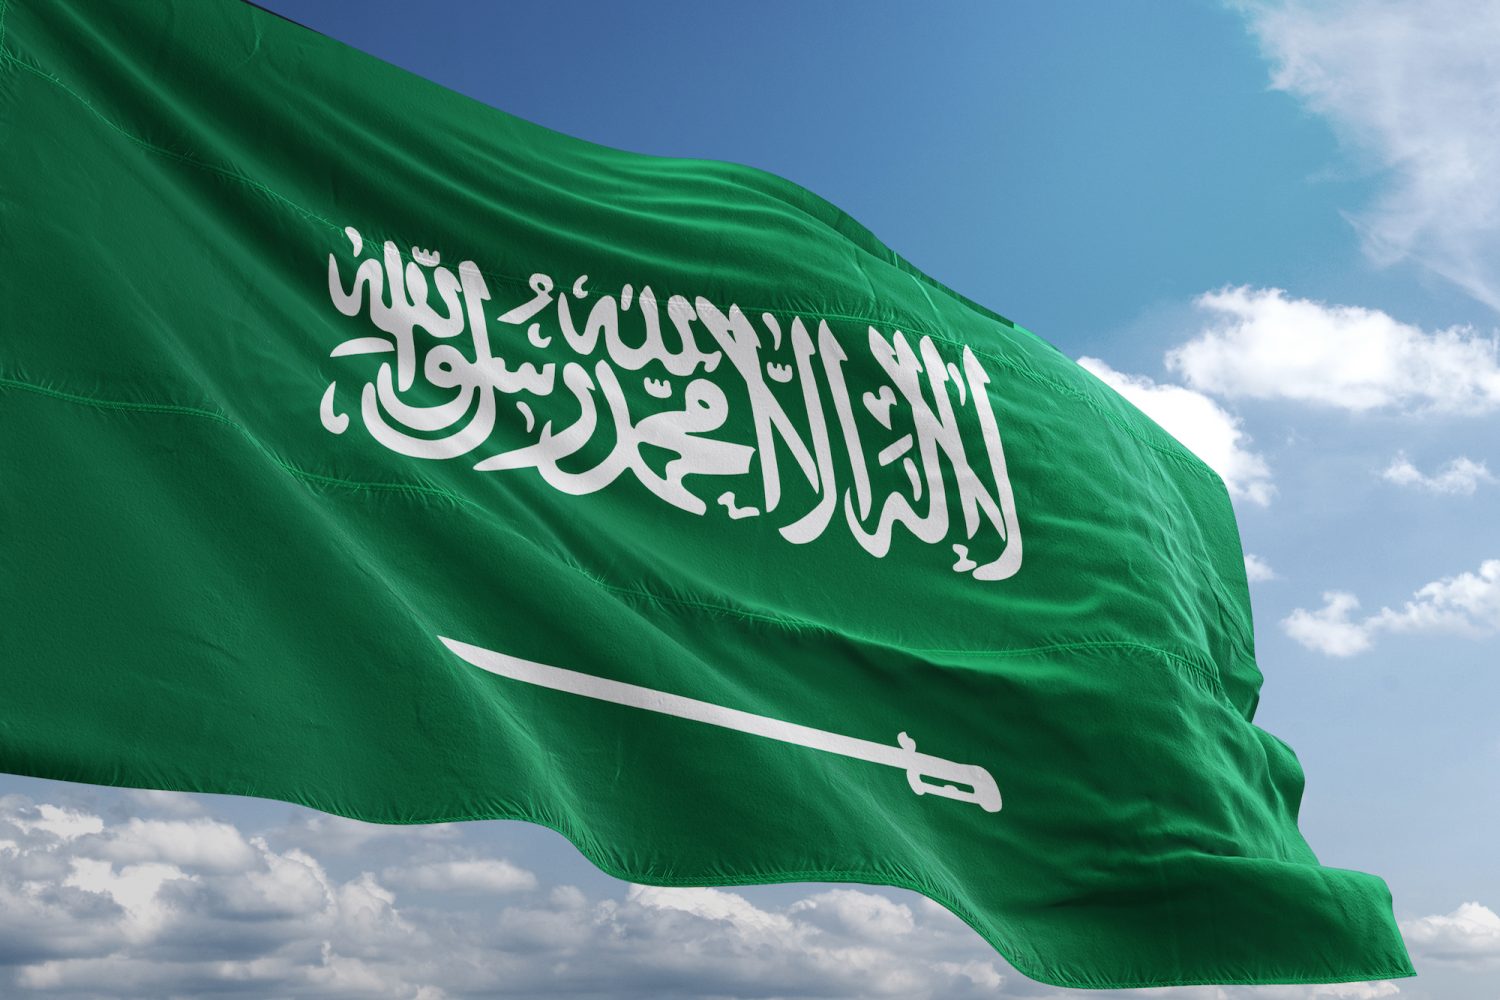 السعودية تعلن حظر شامل بتداول هذه المقاطع والصور من اليوم .. وغرامة 20 ألف ريال لكل مخالف ! (تفاصيل!